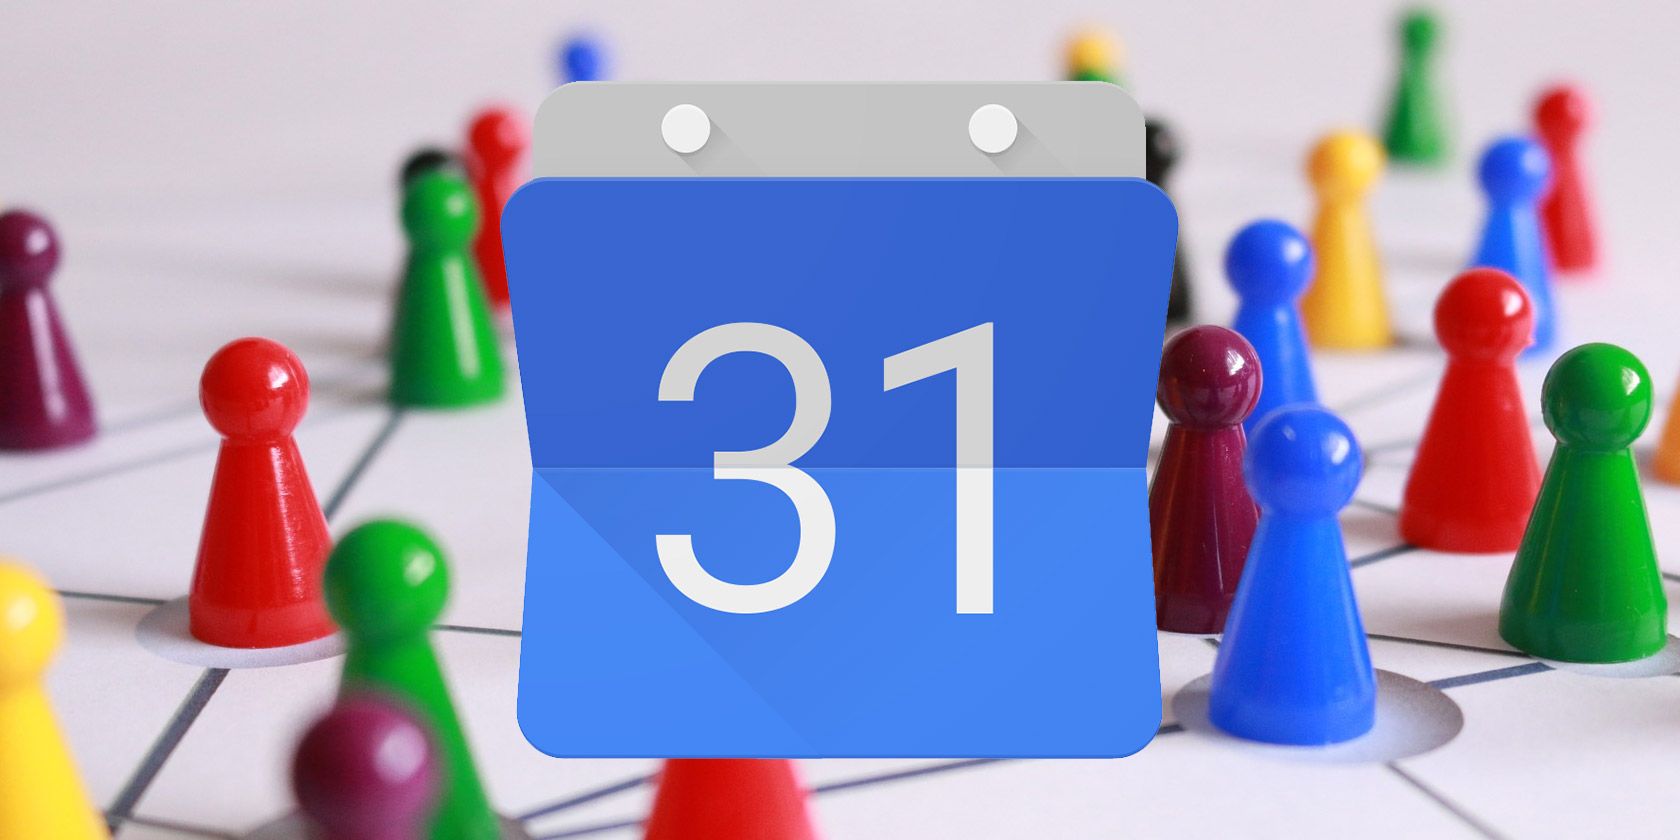 12 Productive Ideas for a Shared Google Calendar